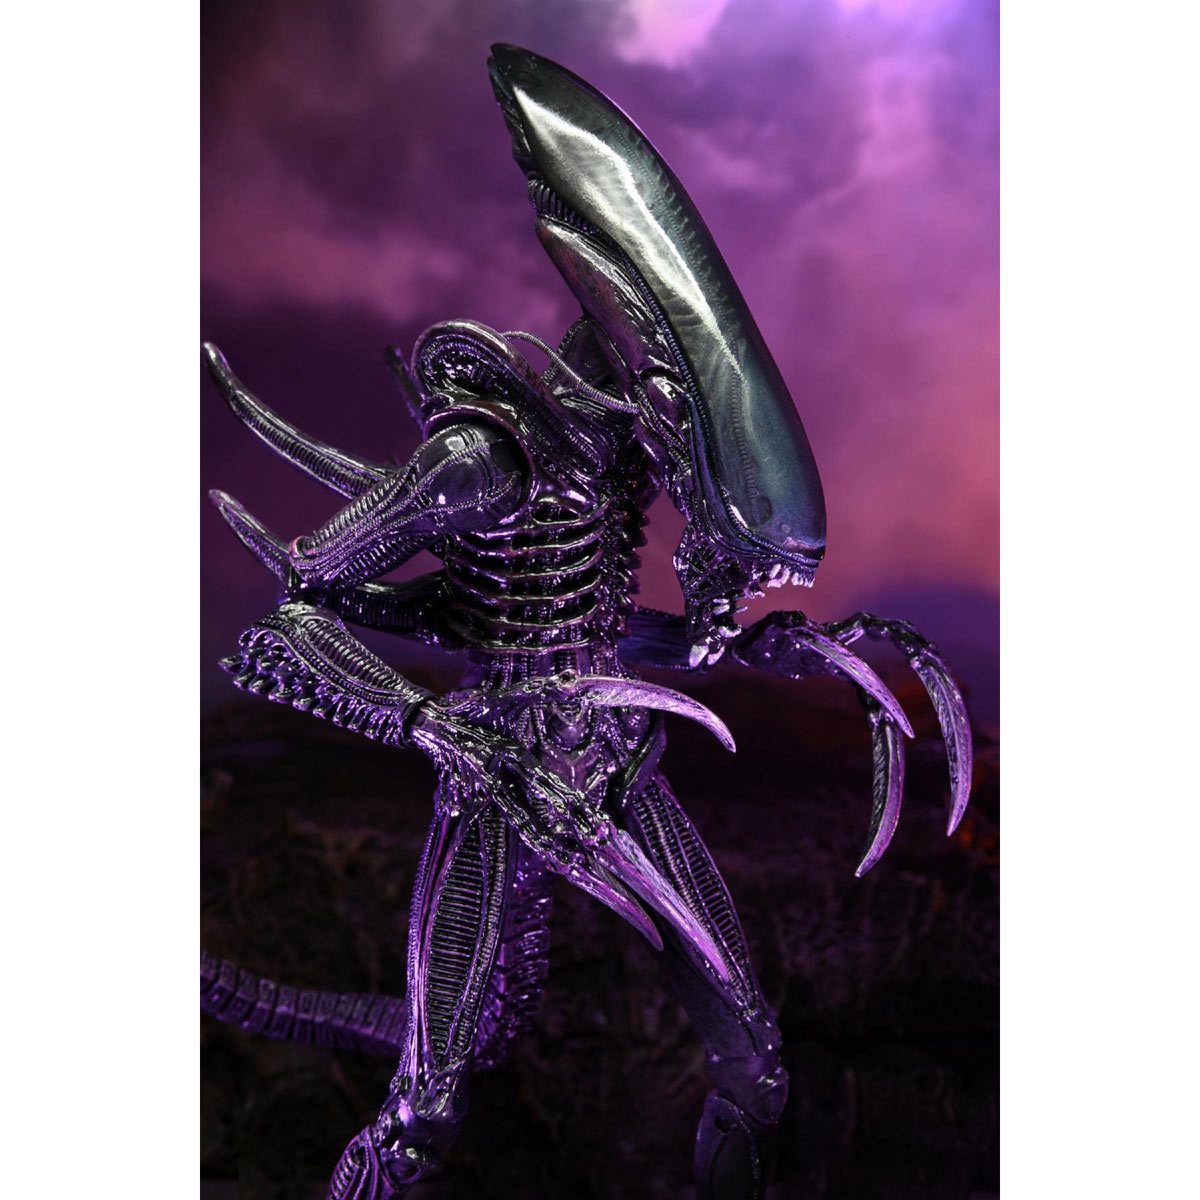 Neca Alien Vs Predator: Razor Claws Alien 7 Scale Action Figure